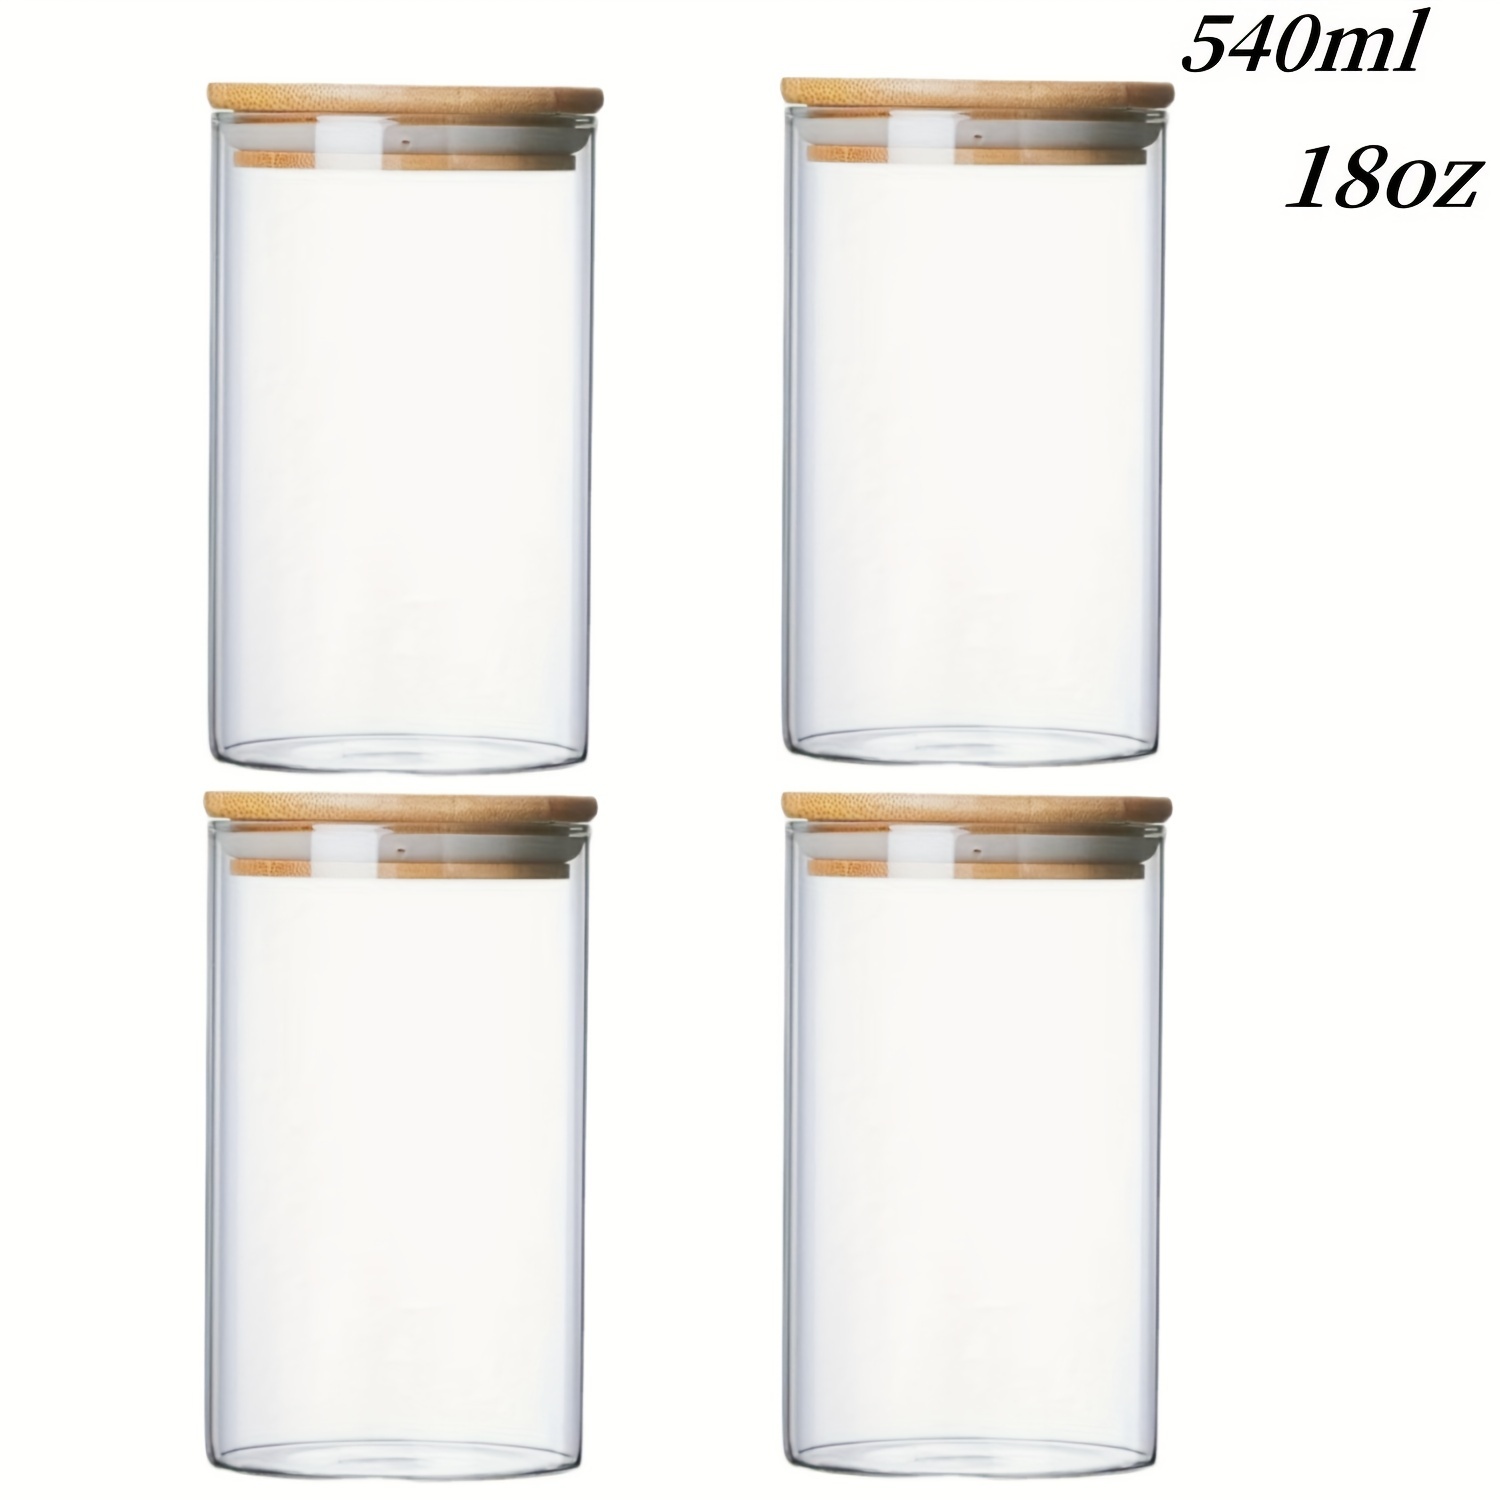 Envases de porciones recipientes de vidrio almacenamiento